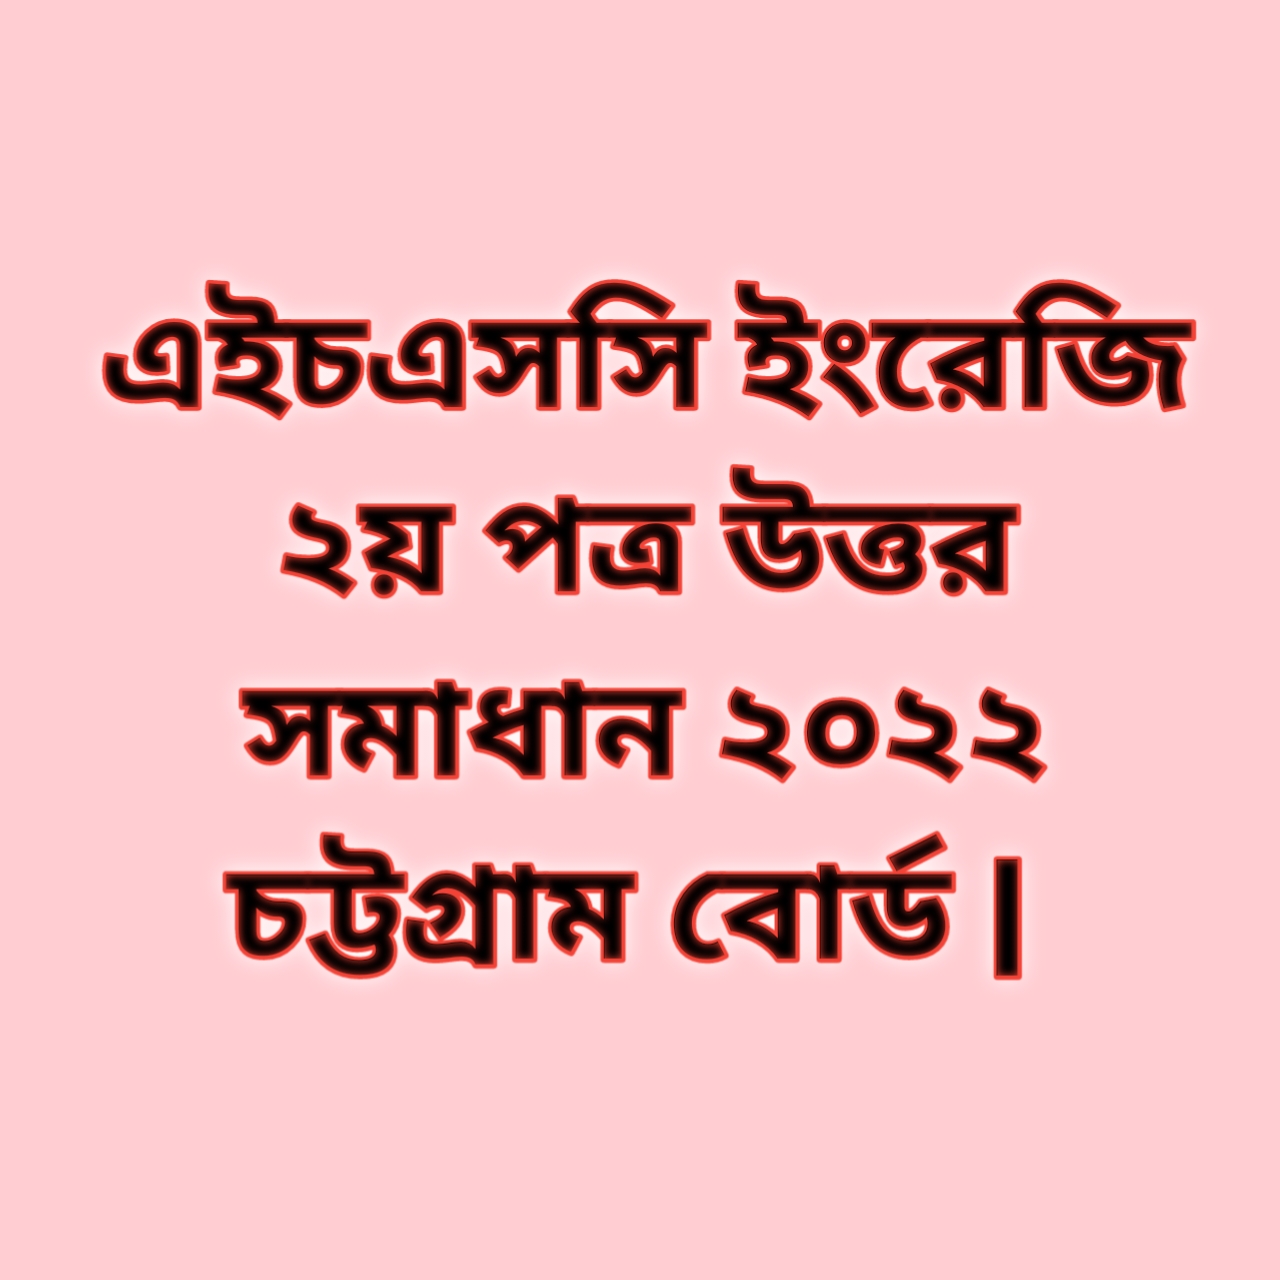 এইচএসসি ইংরেজি ২য় পত্র সিকিউ প্রশ্ন উত্তর সমাধান ২০২২ চট্টগ্রাম বোর্ড | hsc English 2nd paper cq question solution answer 2022 Chittagong Board